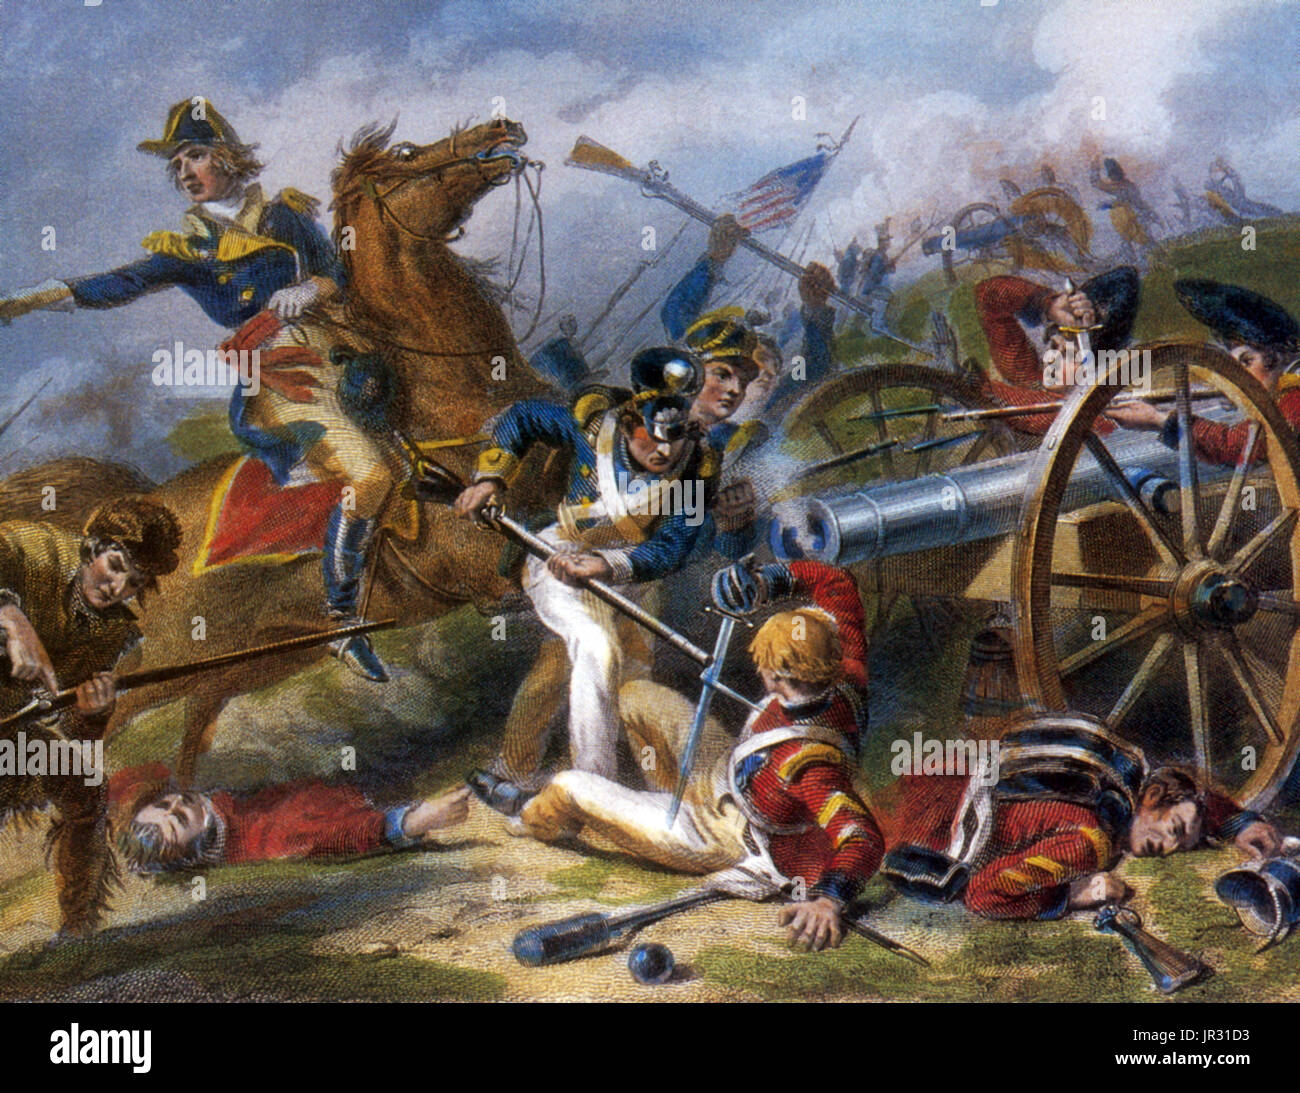 La batalla de Chippawa (a veces mal deletreado Chippewa) fue una victoria para el ejército de los Estados Unidos en la guerra de 1812, durante una invasión de Canadá superior a lo largo del Río Niágara el 5 de julio de 1814. La batalla de Chippawa, y la subsiguiente batalla de Lundy's Lane, demostró que la American unidades regulares podría celebrar su propia contra British asiduos si bien entrenado y bien dirigido. Se considera generalmente que Riall, aunque engañados en cuanto a la fortaleza de las fuerzas americanas y su calidad overconfidently avanzada, y su táctica errónea condujo a la pesada víctimas británicas. El 25 Infan Foto de stock